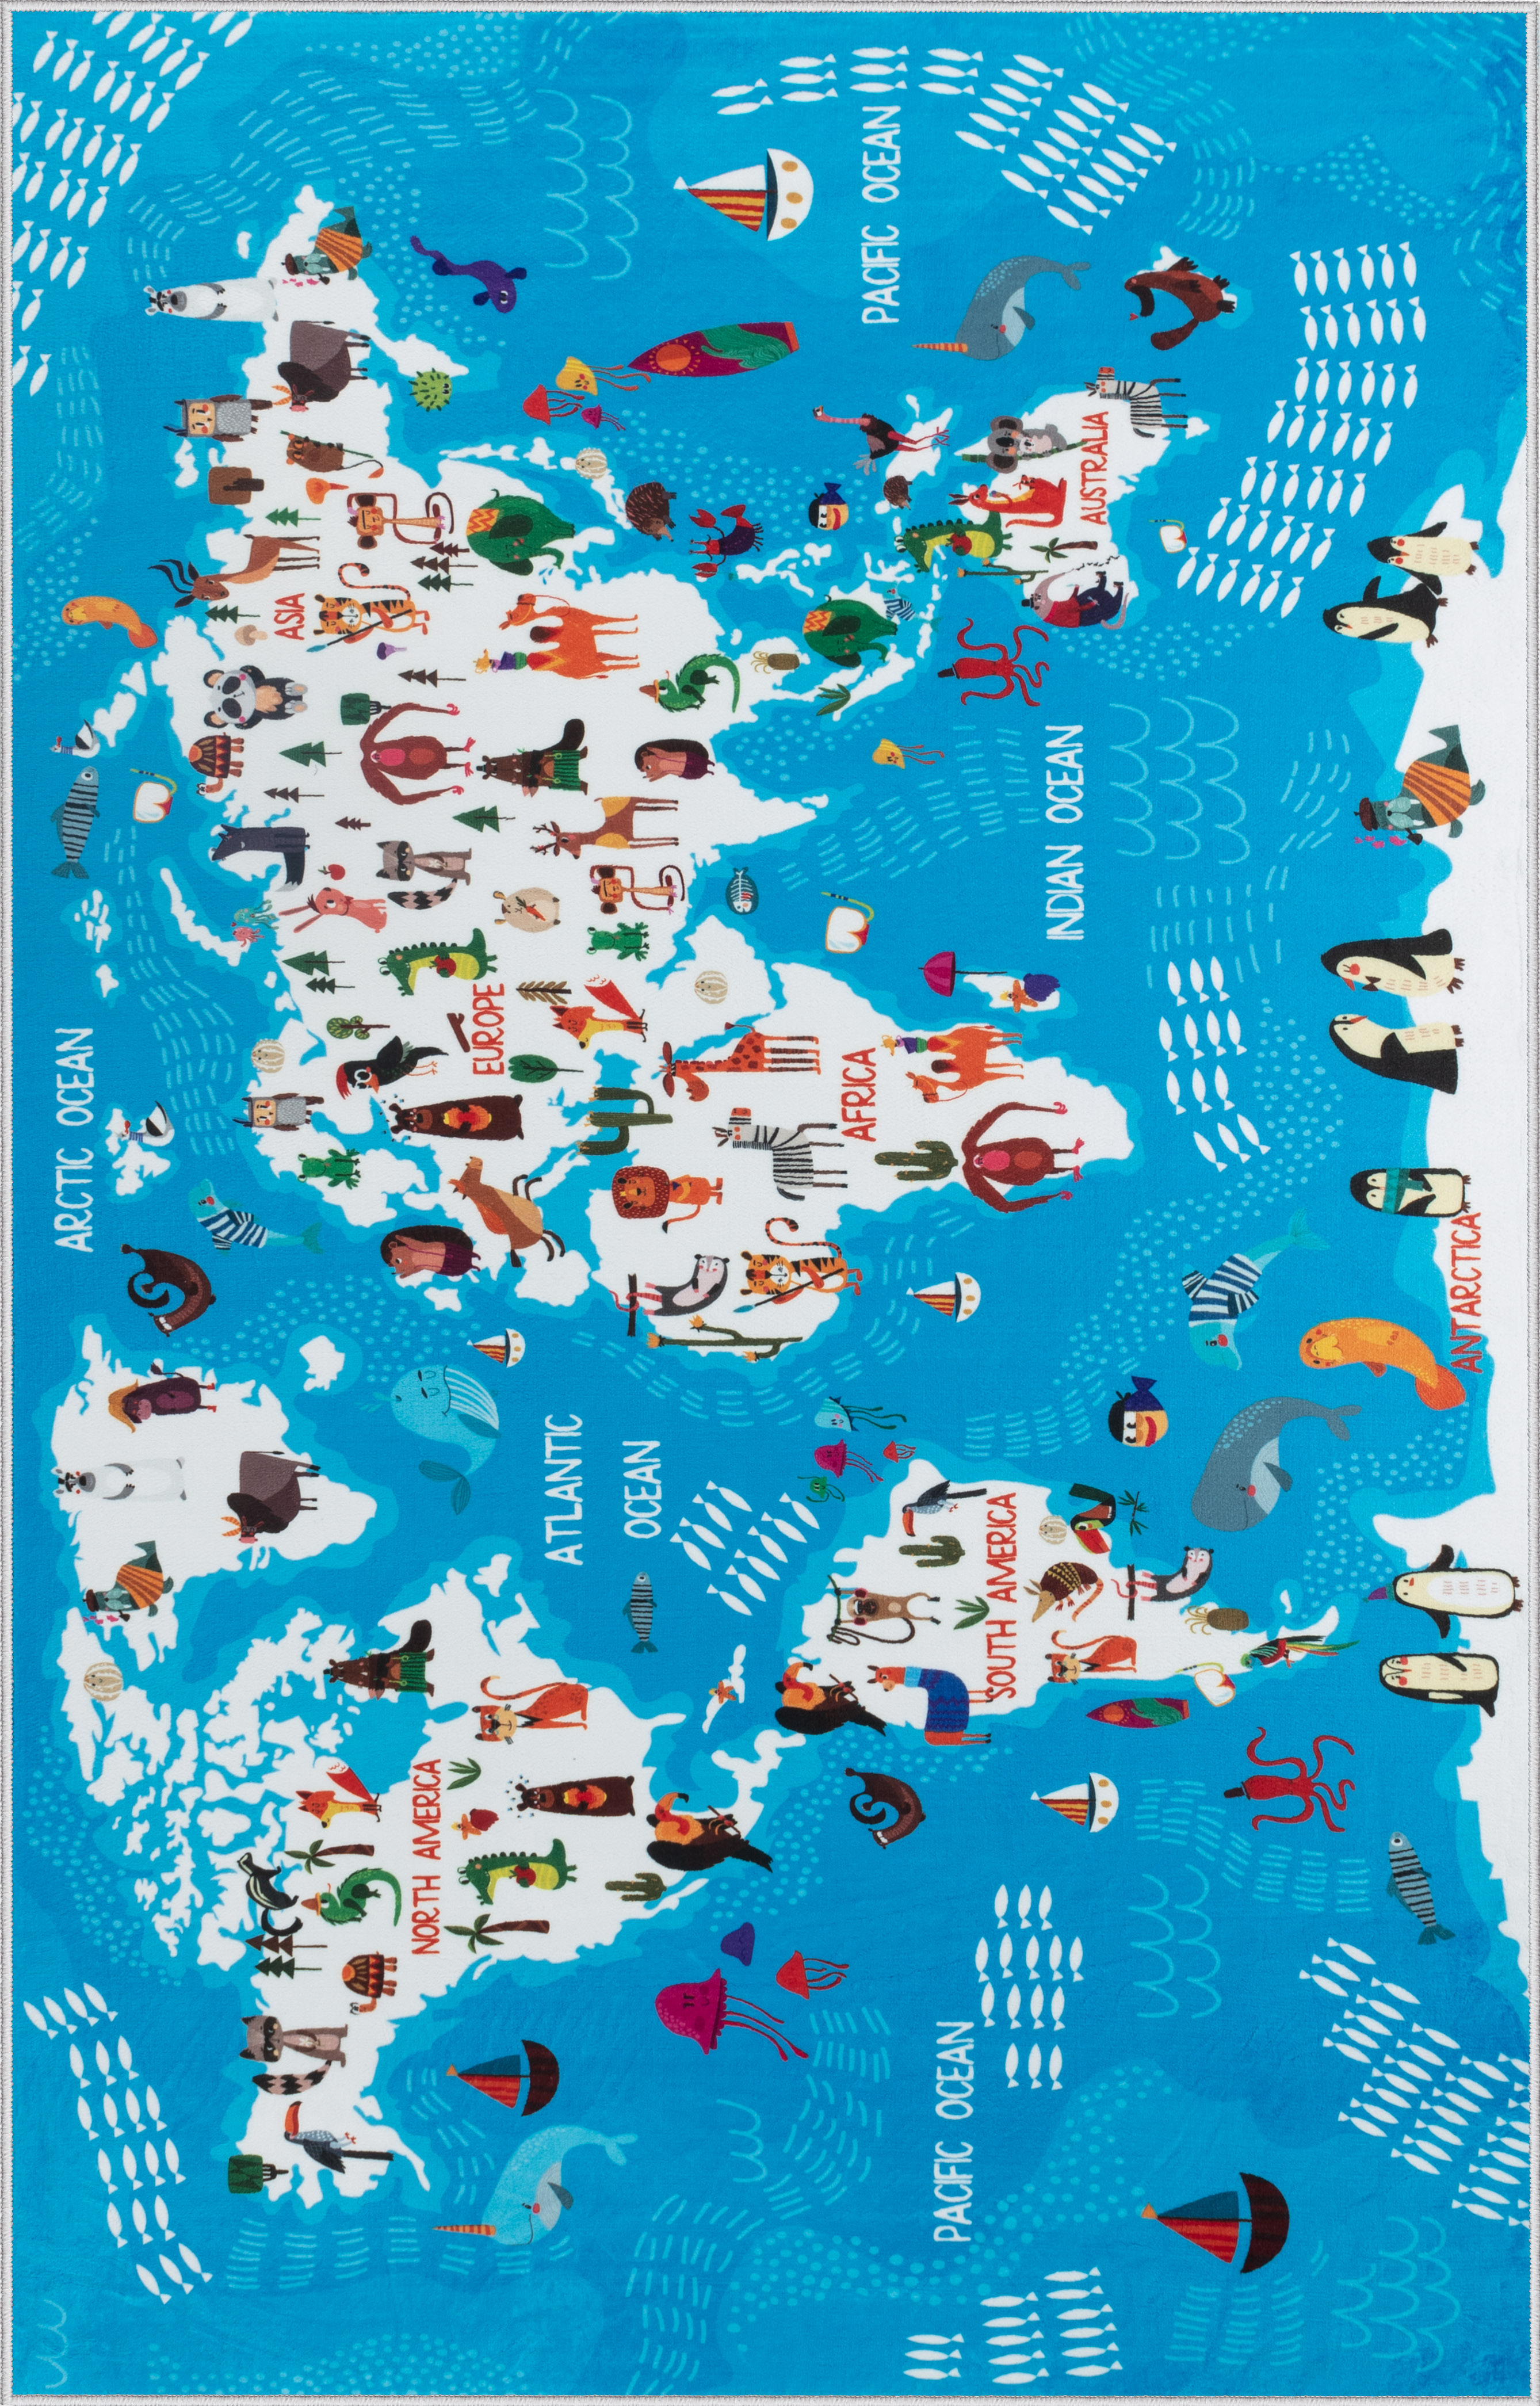 Ковер комнатный детский KOVRIKANA карта мира развивающий голубой океан 160см на 225см - фото 3